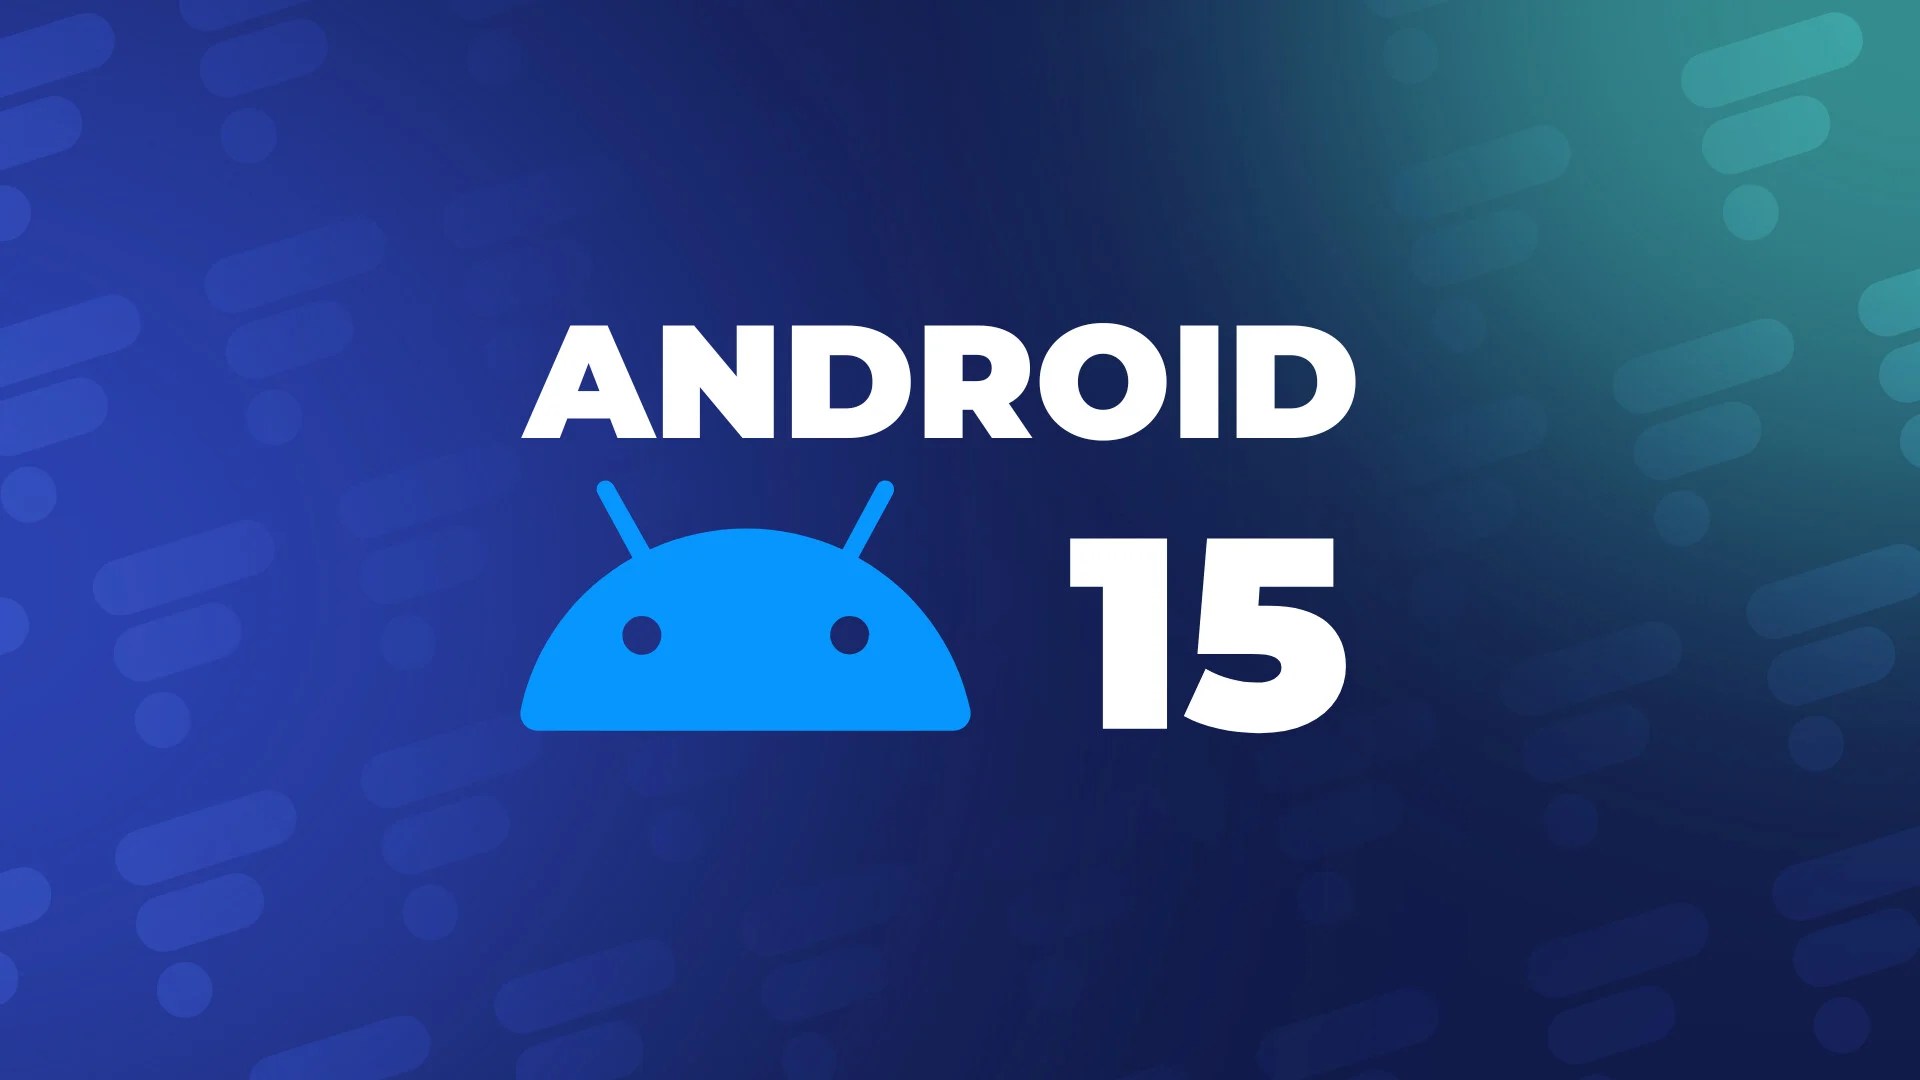 Mise à jour Android 15 : smartphones compatibles, nouveautés, dates… Tout ce que l’on sait